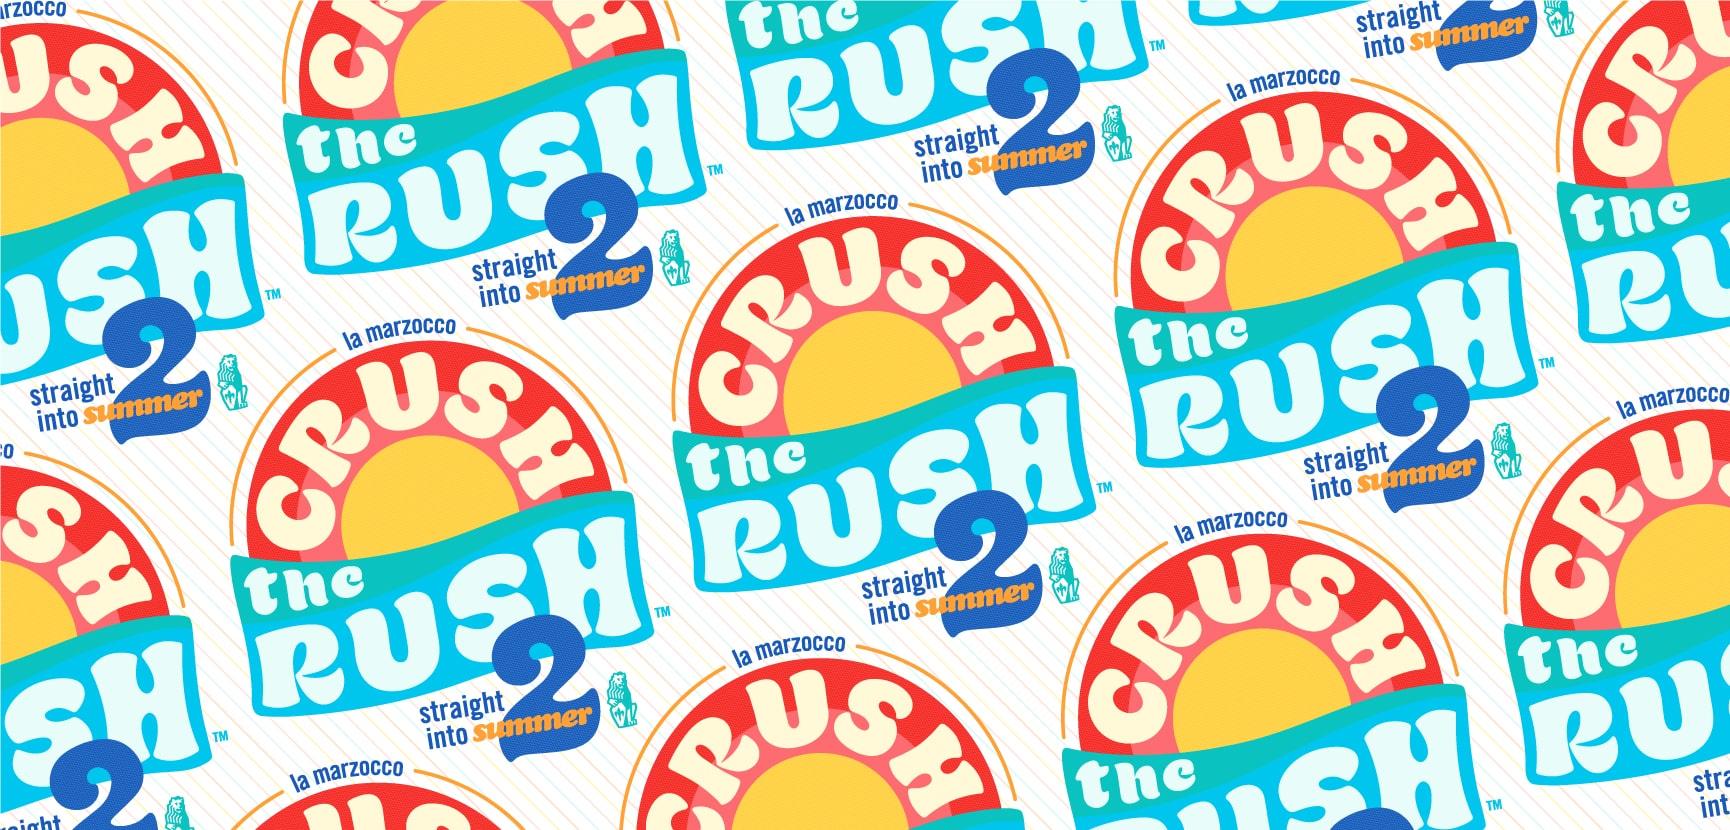 Crush the Rush badges